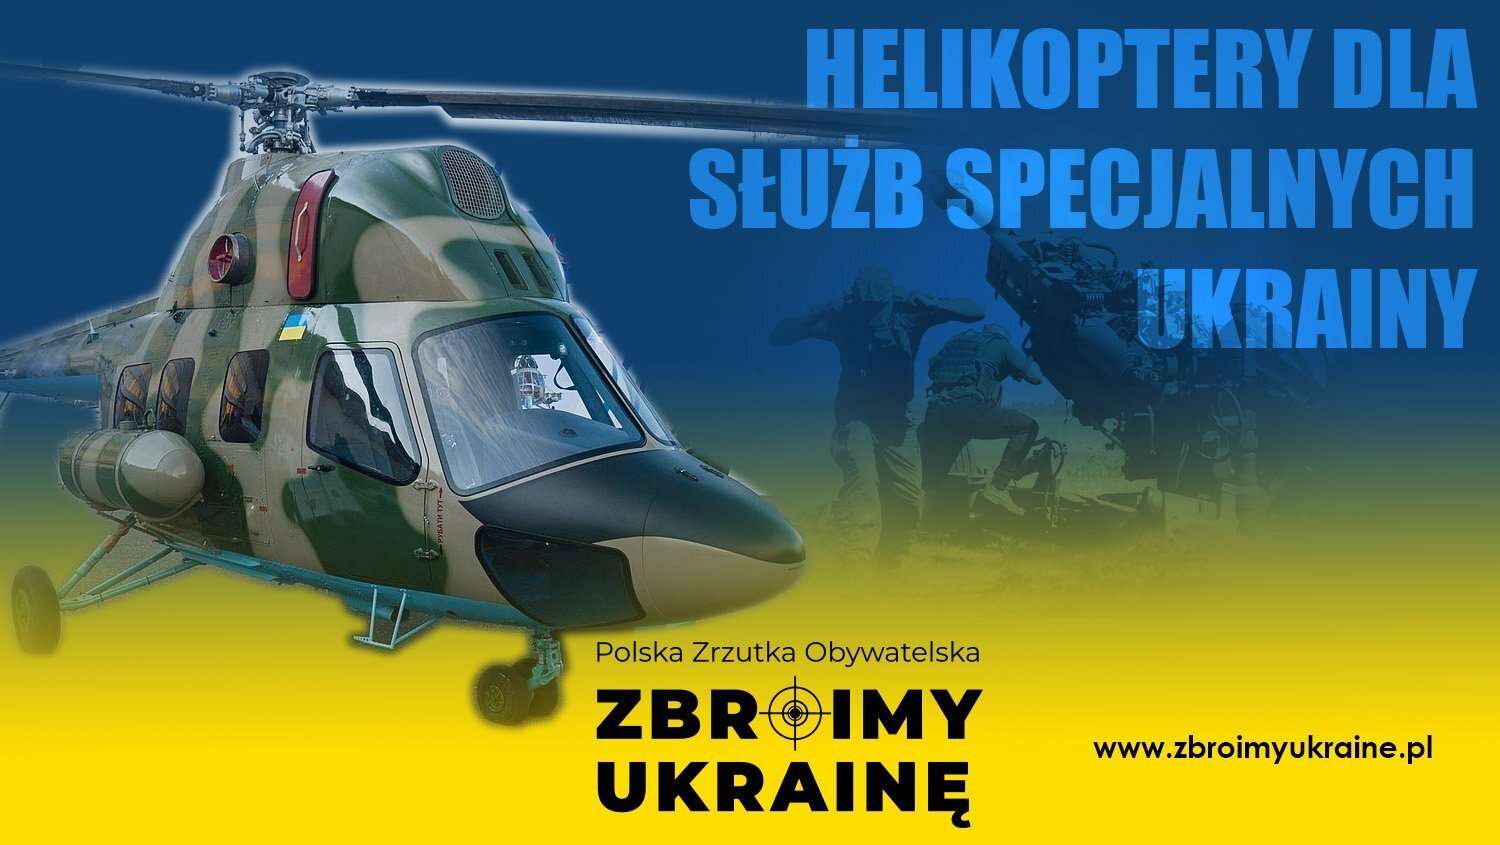 “Допомагати так, щоб війна швидше закінчилась” або як польський журналіст збирає на гелікоптери для України Eb B A Fcc F UAinKrakow.pl